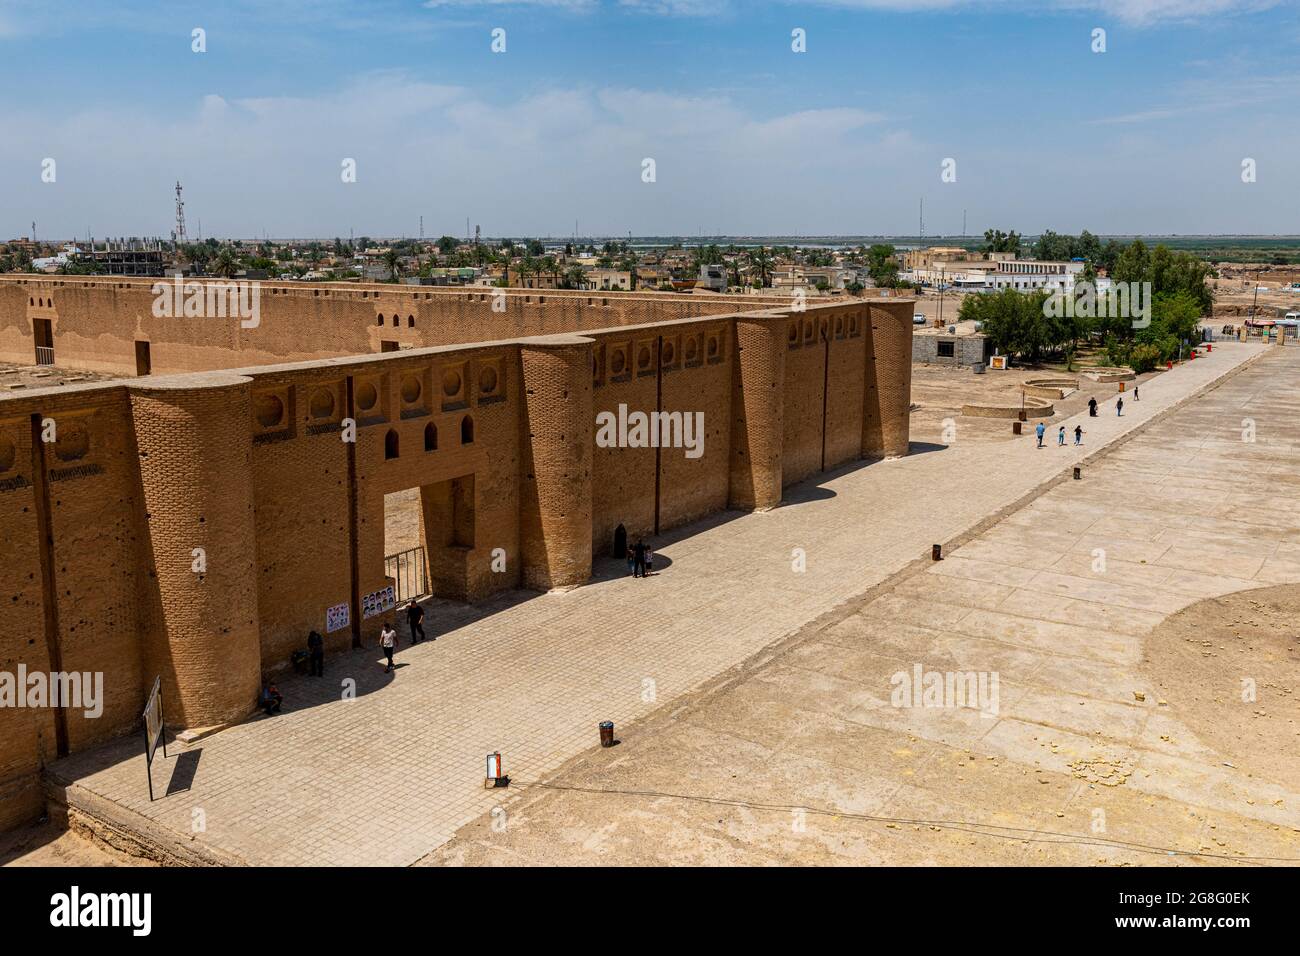 La Grande Mosquée de Samarra, site classé au patrimoine mondial de l'UNESCO, Samarra, Irak, Moyen-Orient Banque D'Images